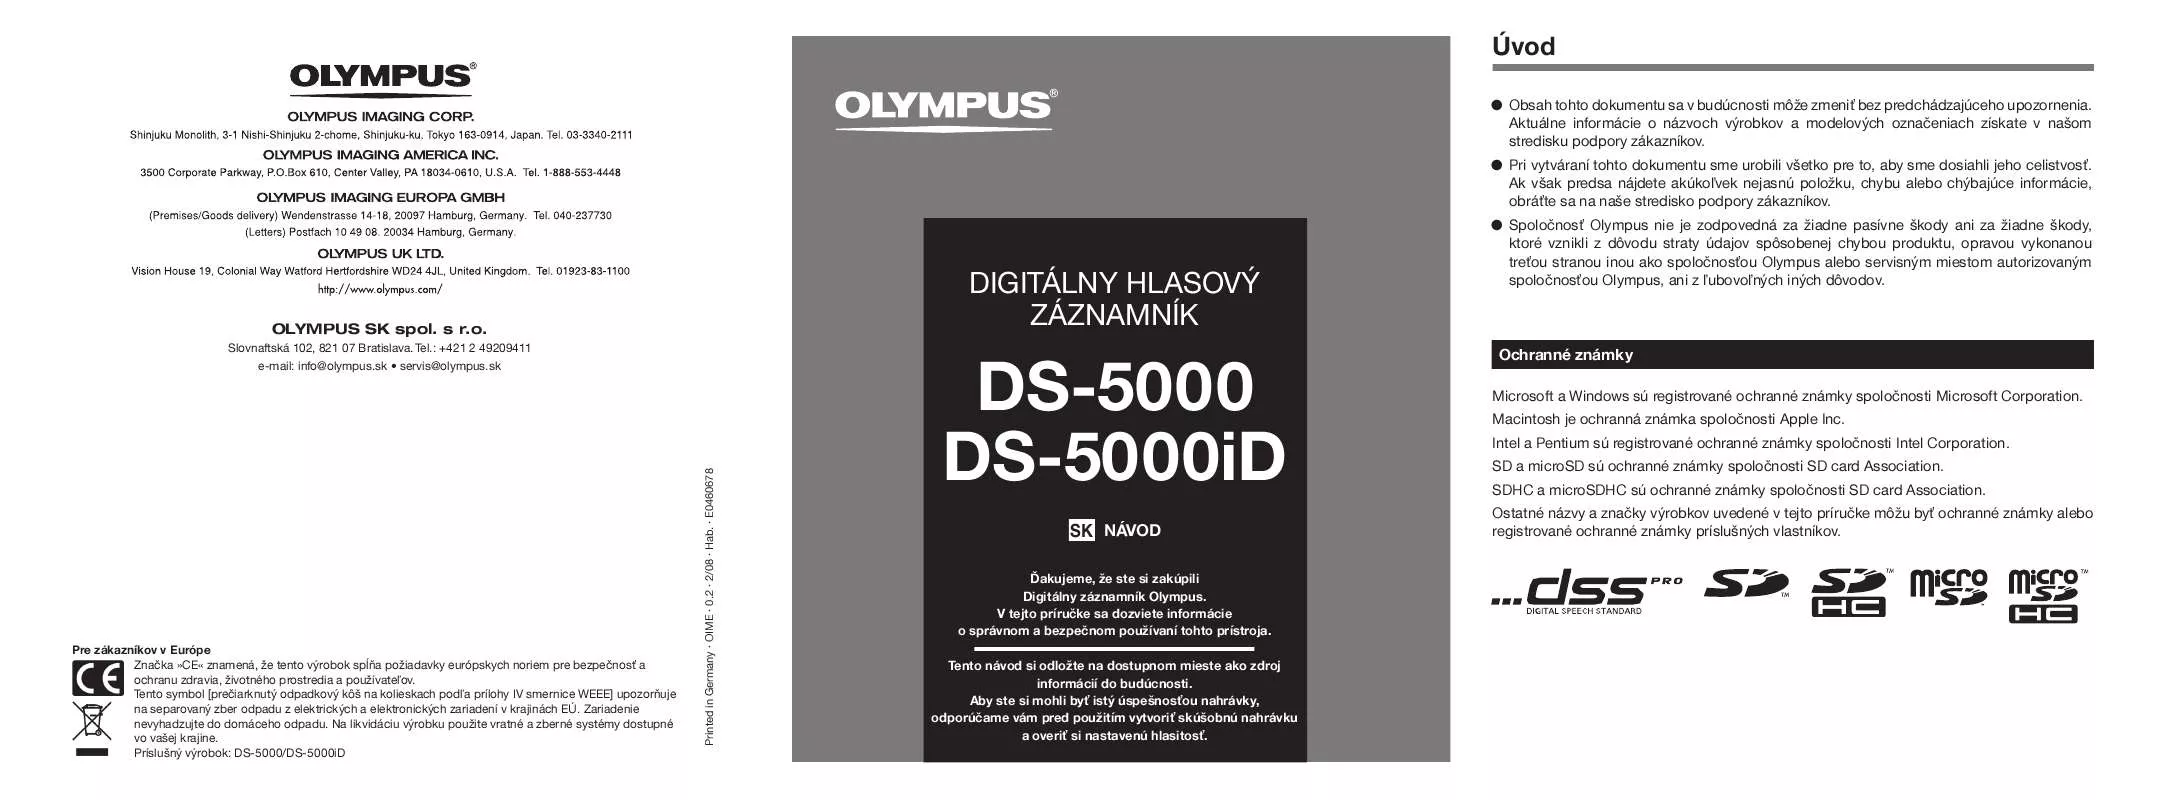 Mode d'emploi OLYMPUS DS-5000